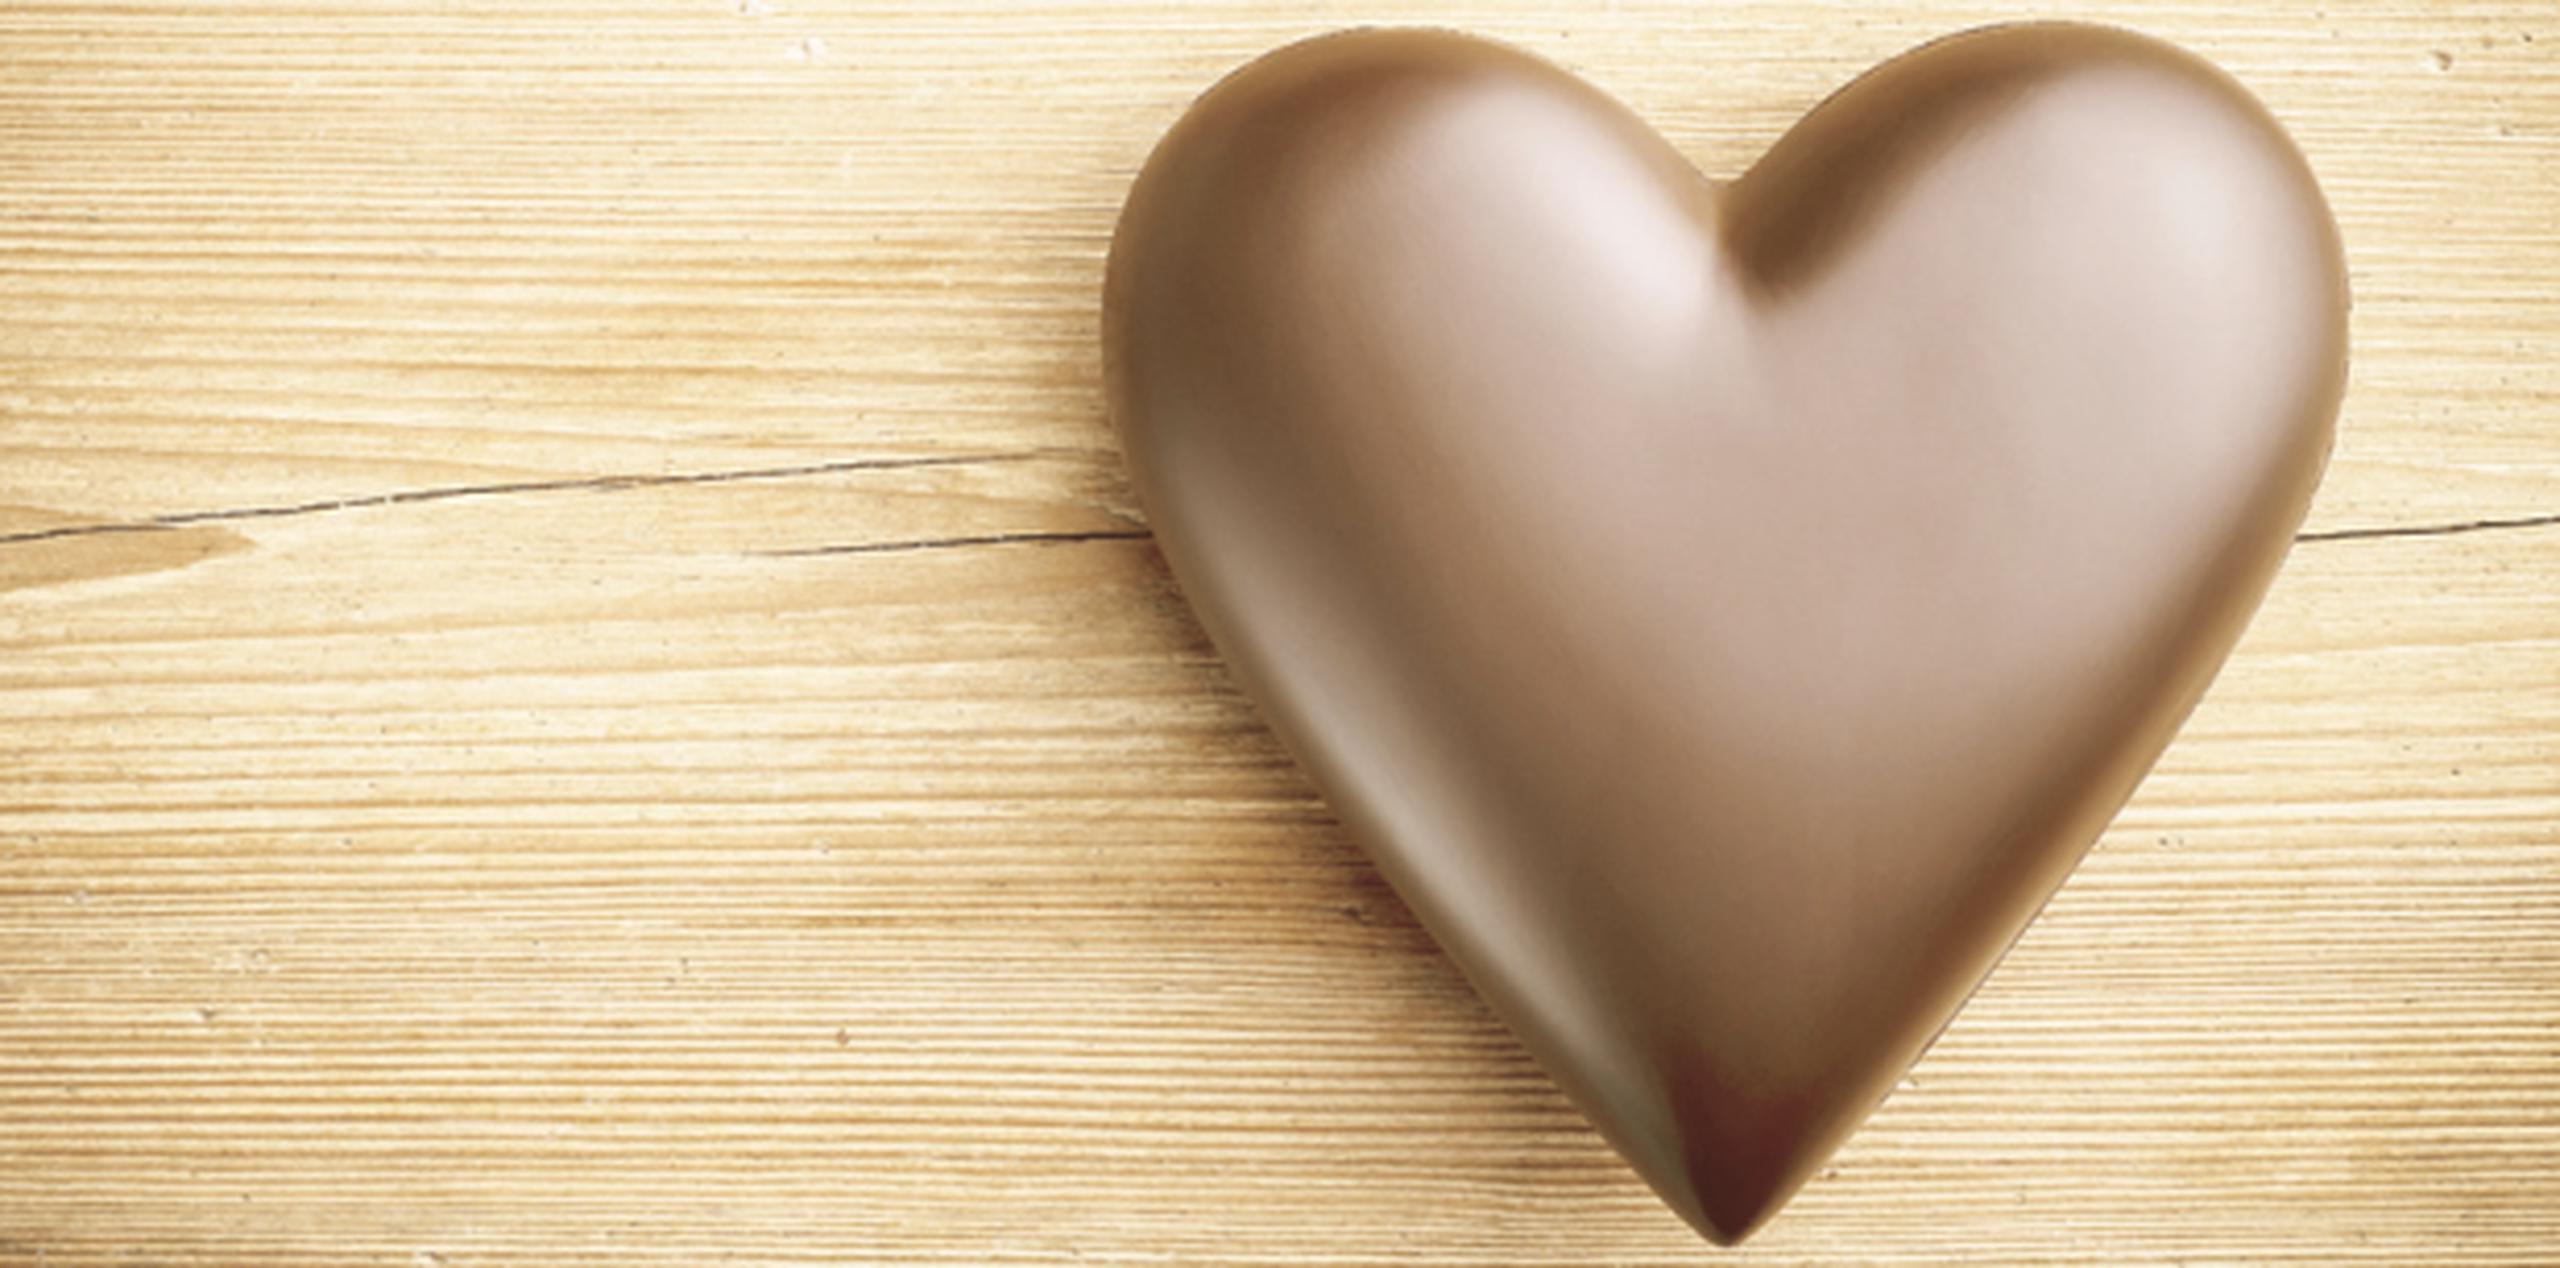 El chocolate negro te mantiene satisfecho por más tiempo por su alto contenido de fibra. (Shutterstock)